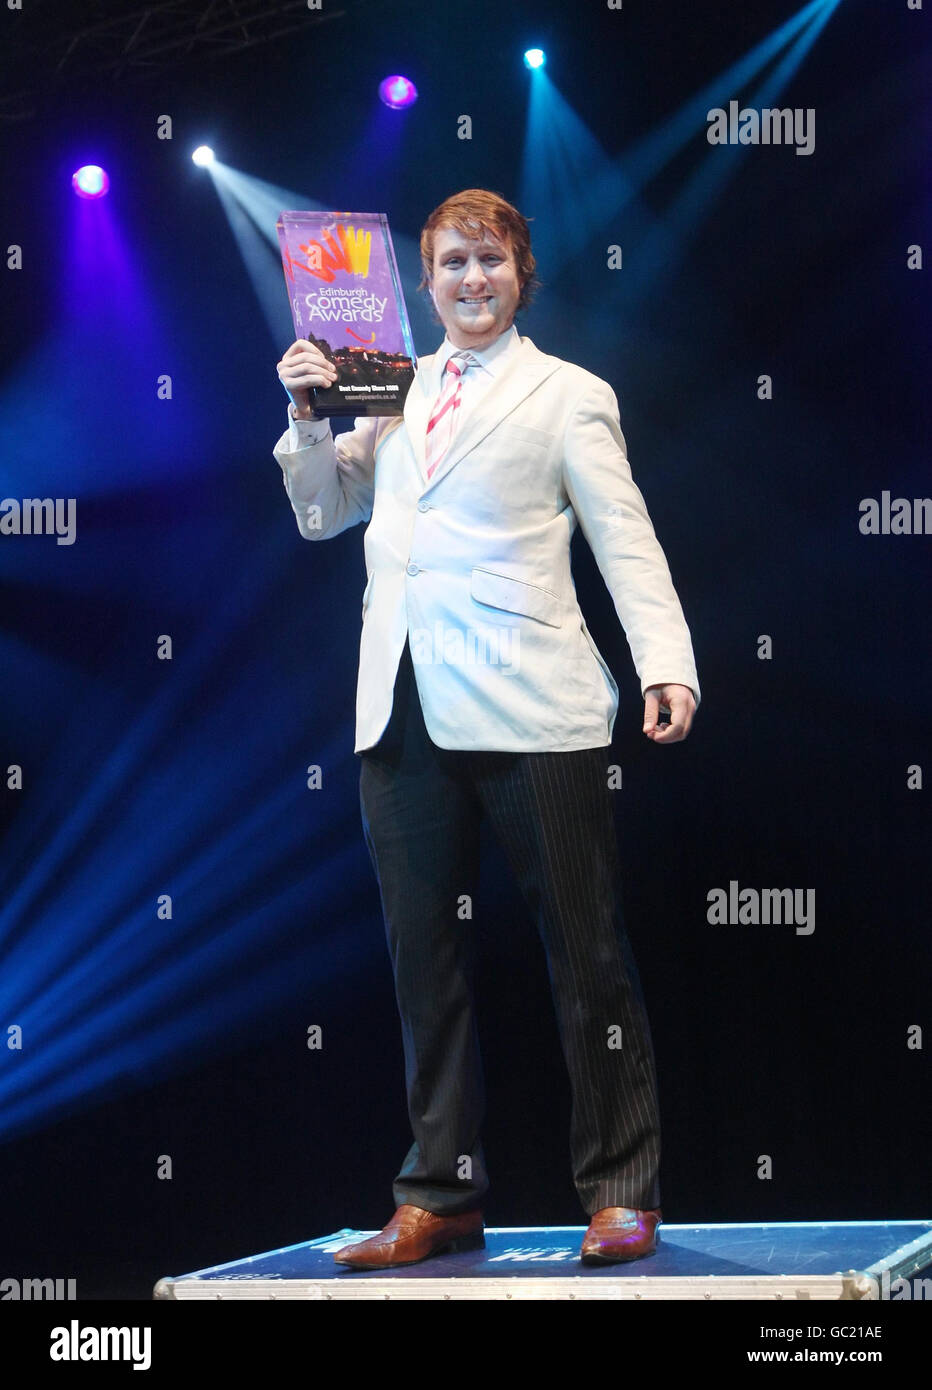 Tim Key, l'un des nominés dans la catégorie Best Comedy Show des 29e Edinburgh Comedy Awards lors d'une séance photo au Plealance Grand, à Édimbourg. Banque D'Images